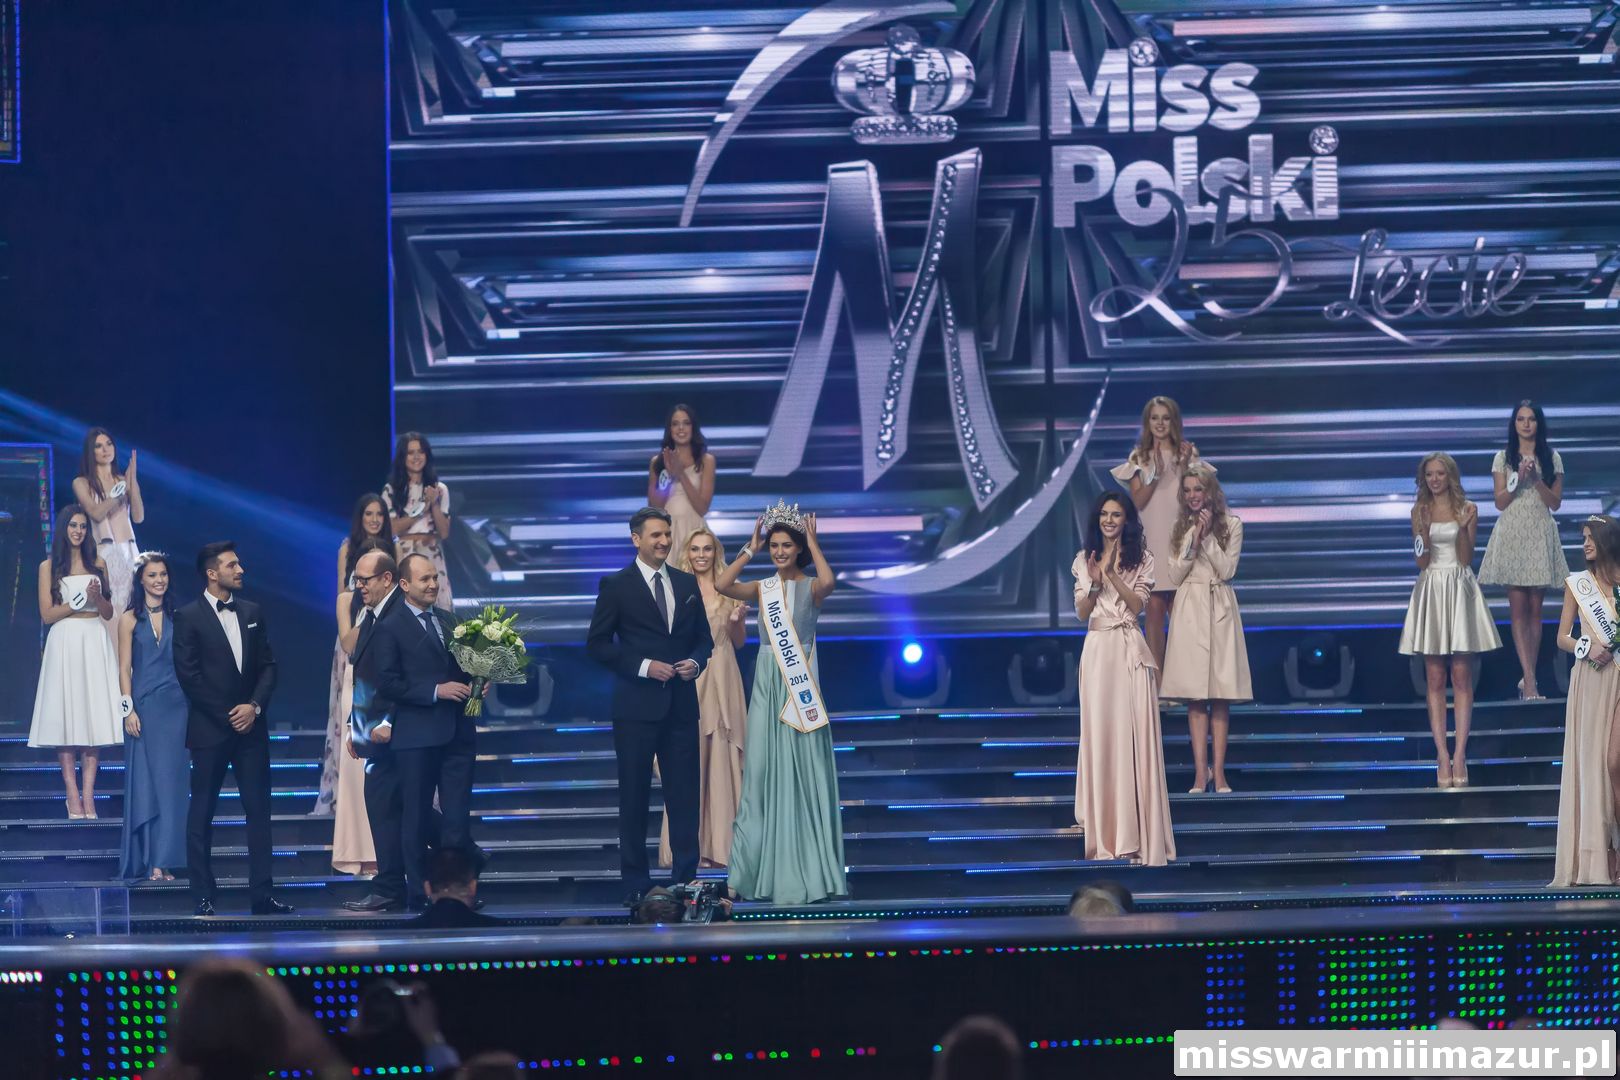 , Miss Polski 2014 została Ewa Mielnicka. Wielki finał w Krynicy Zdrój., Miss Warmii i Mazur, Miss Warmii i Mazur